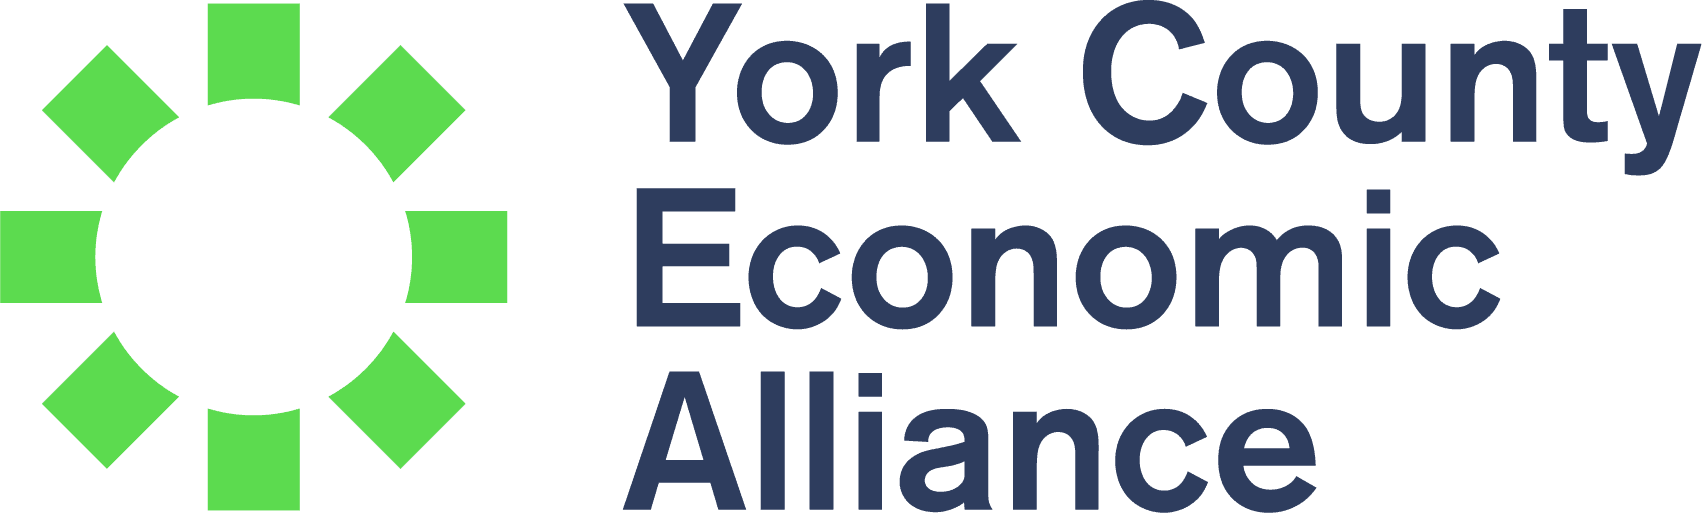 York County Economic Alliance